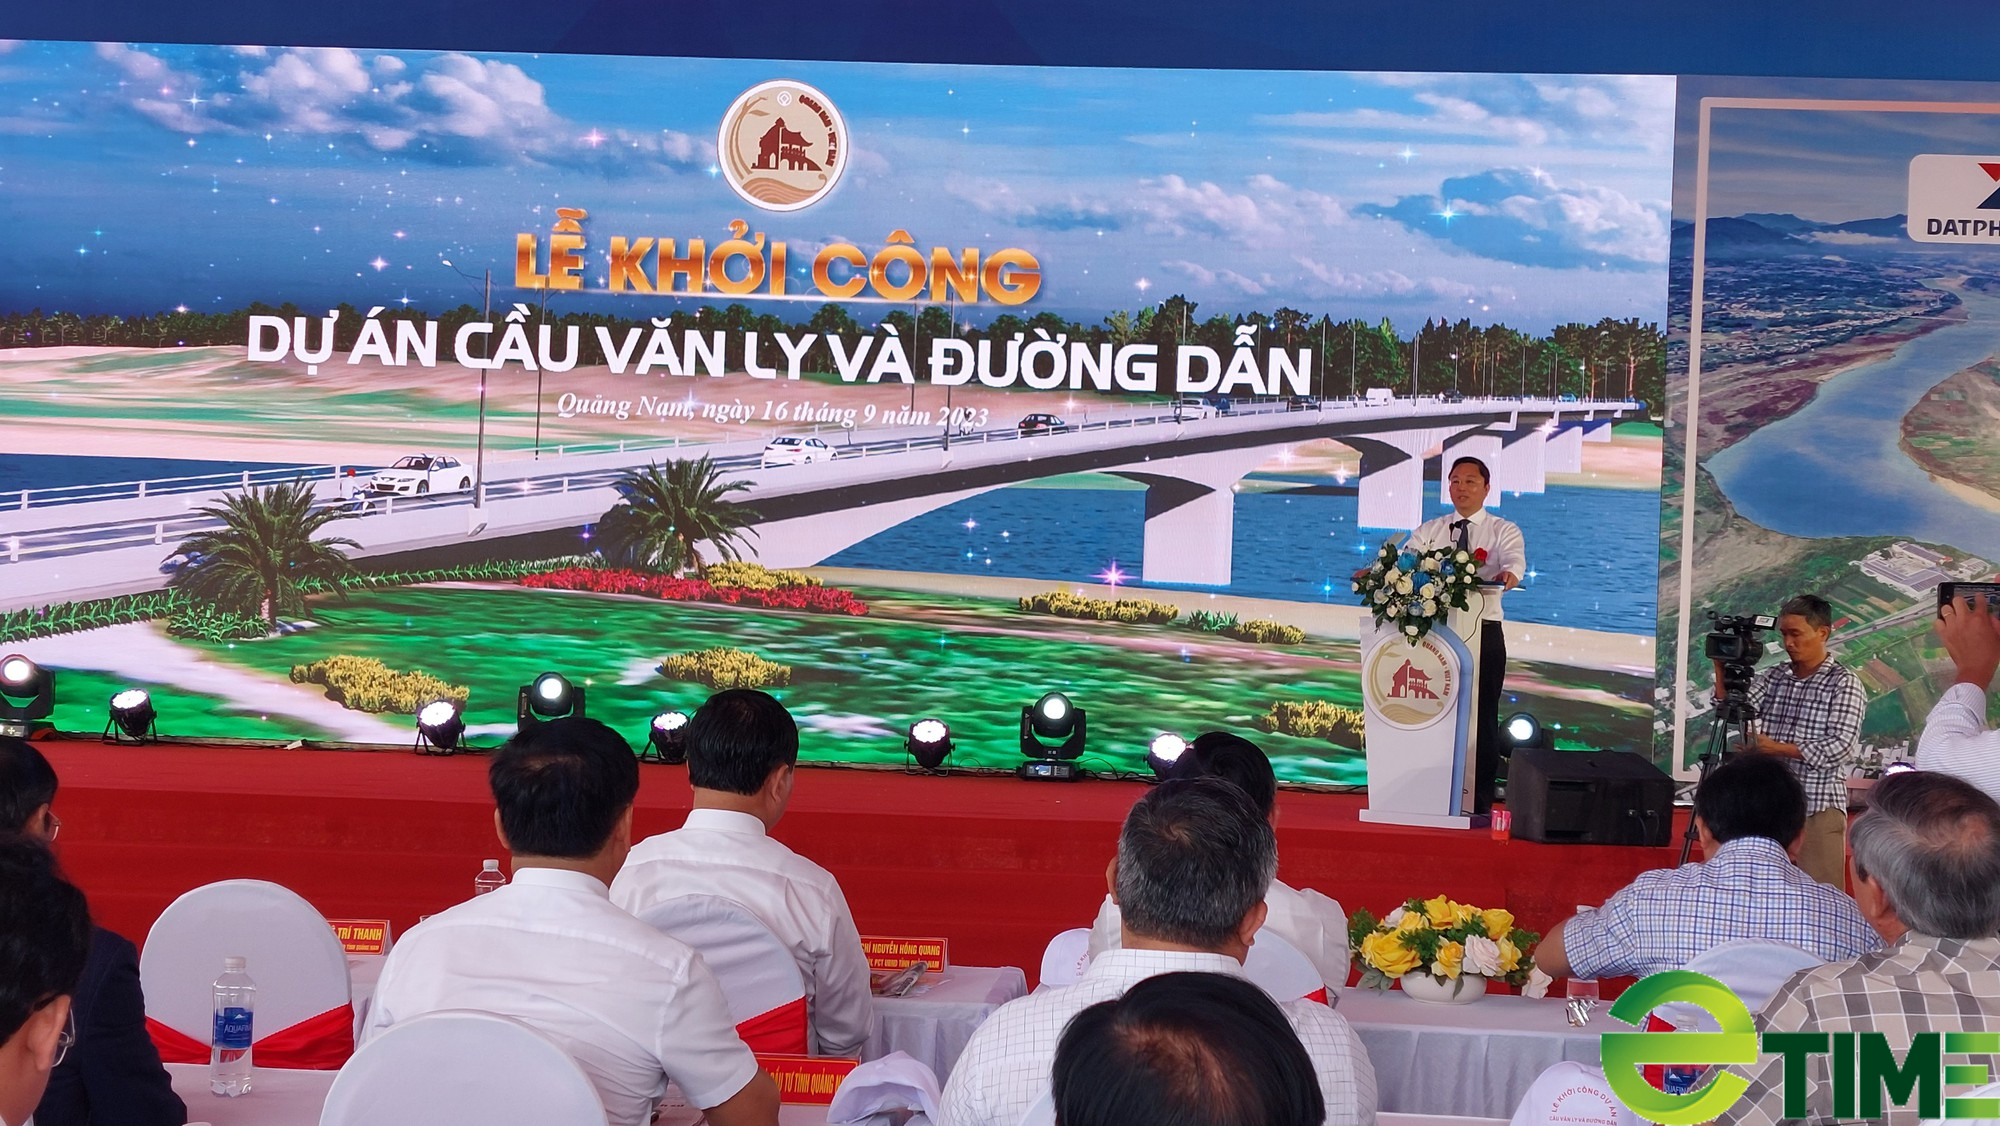 Quảng Nam đầu tư 575 tỷ đồng xây dựng cầu Văn Ly và đường dẫn qua sông Thu Bồn - Ảnh 4.